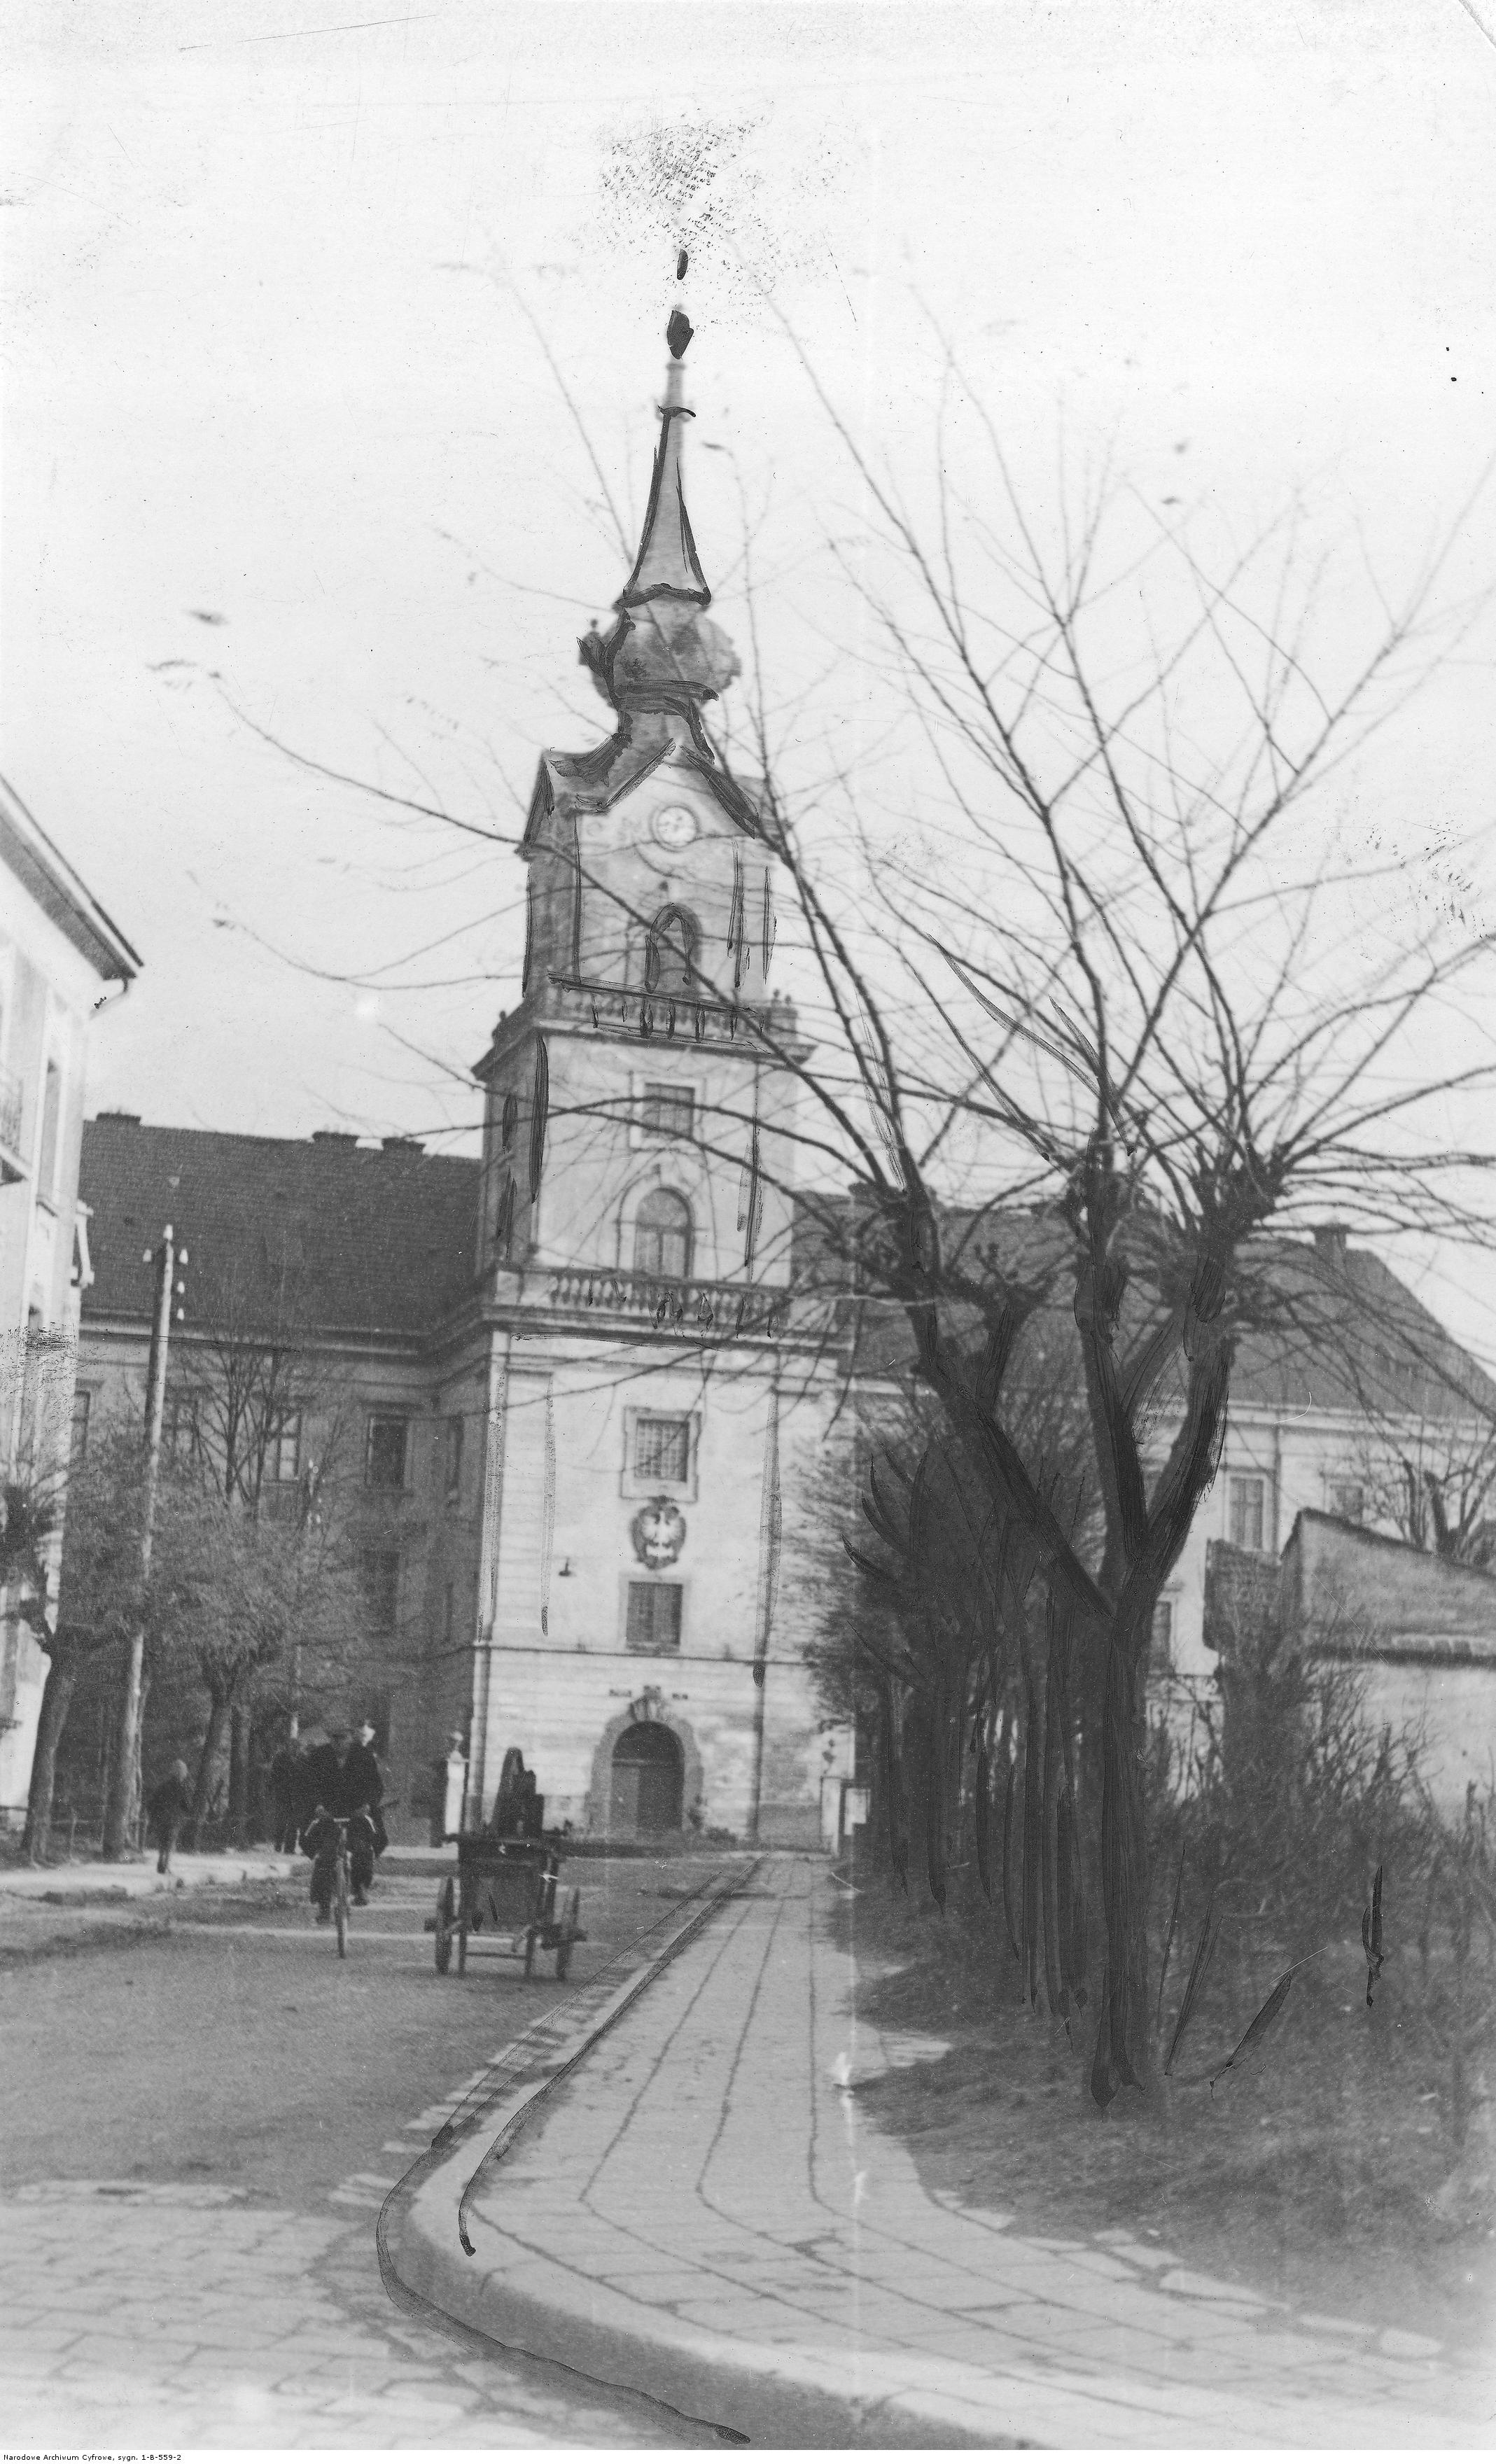 Siedziba Sądu Okręgowego w Rzeszowie znajdująca się w Zamku Lubomirskich, rok 1934